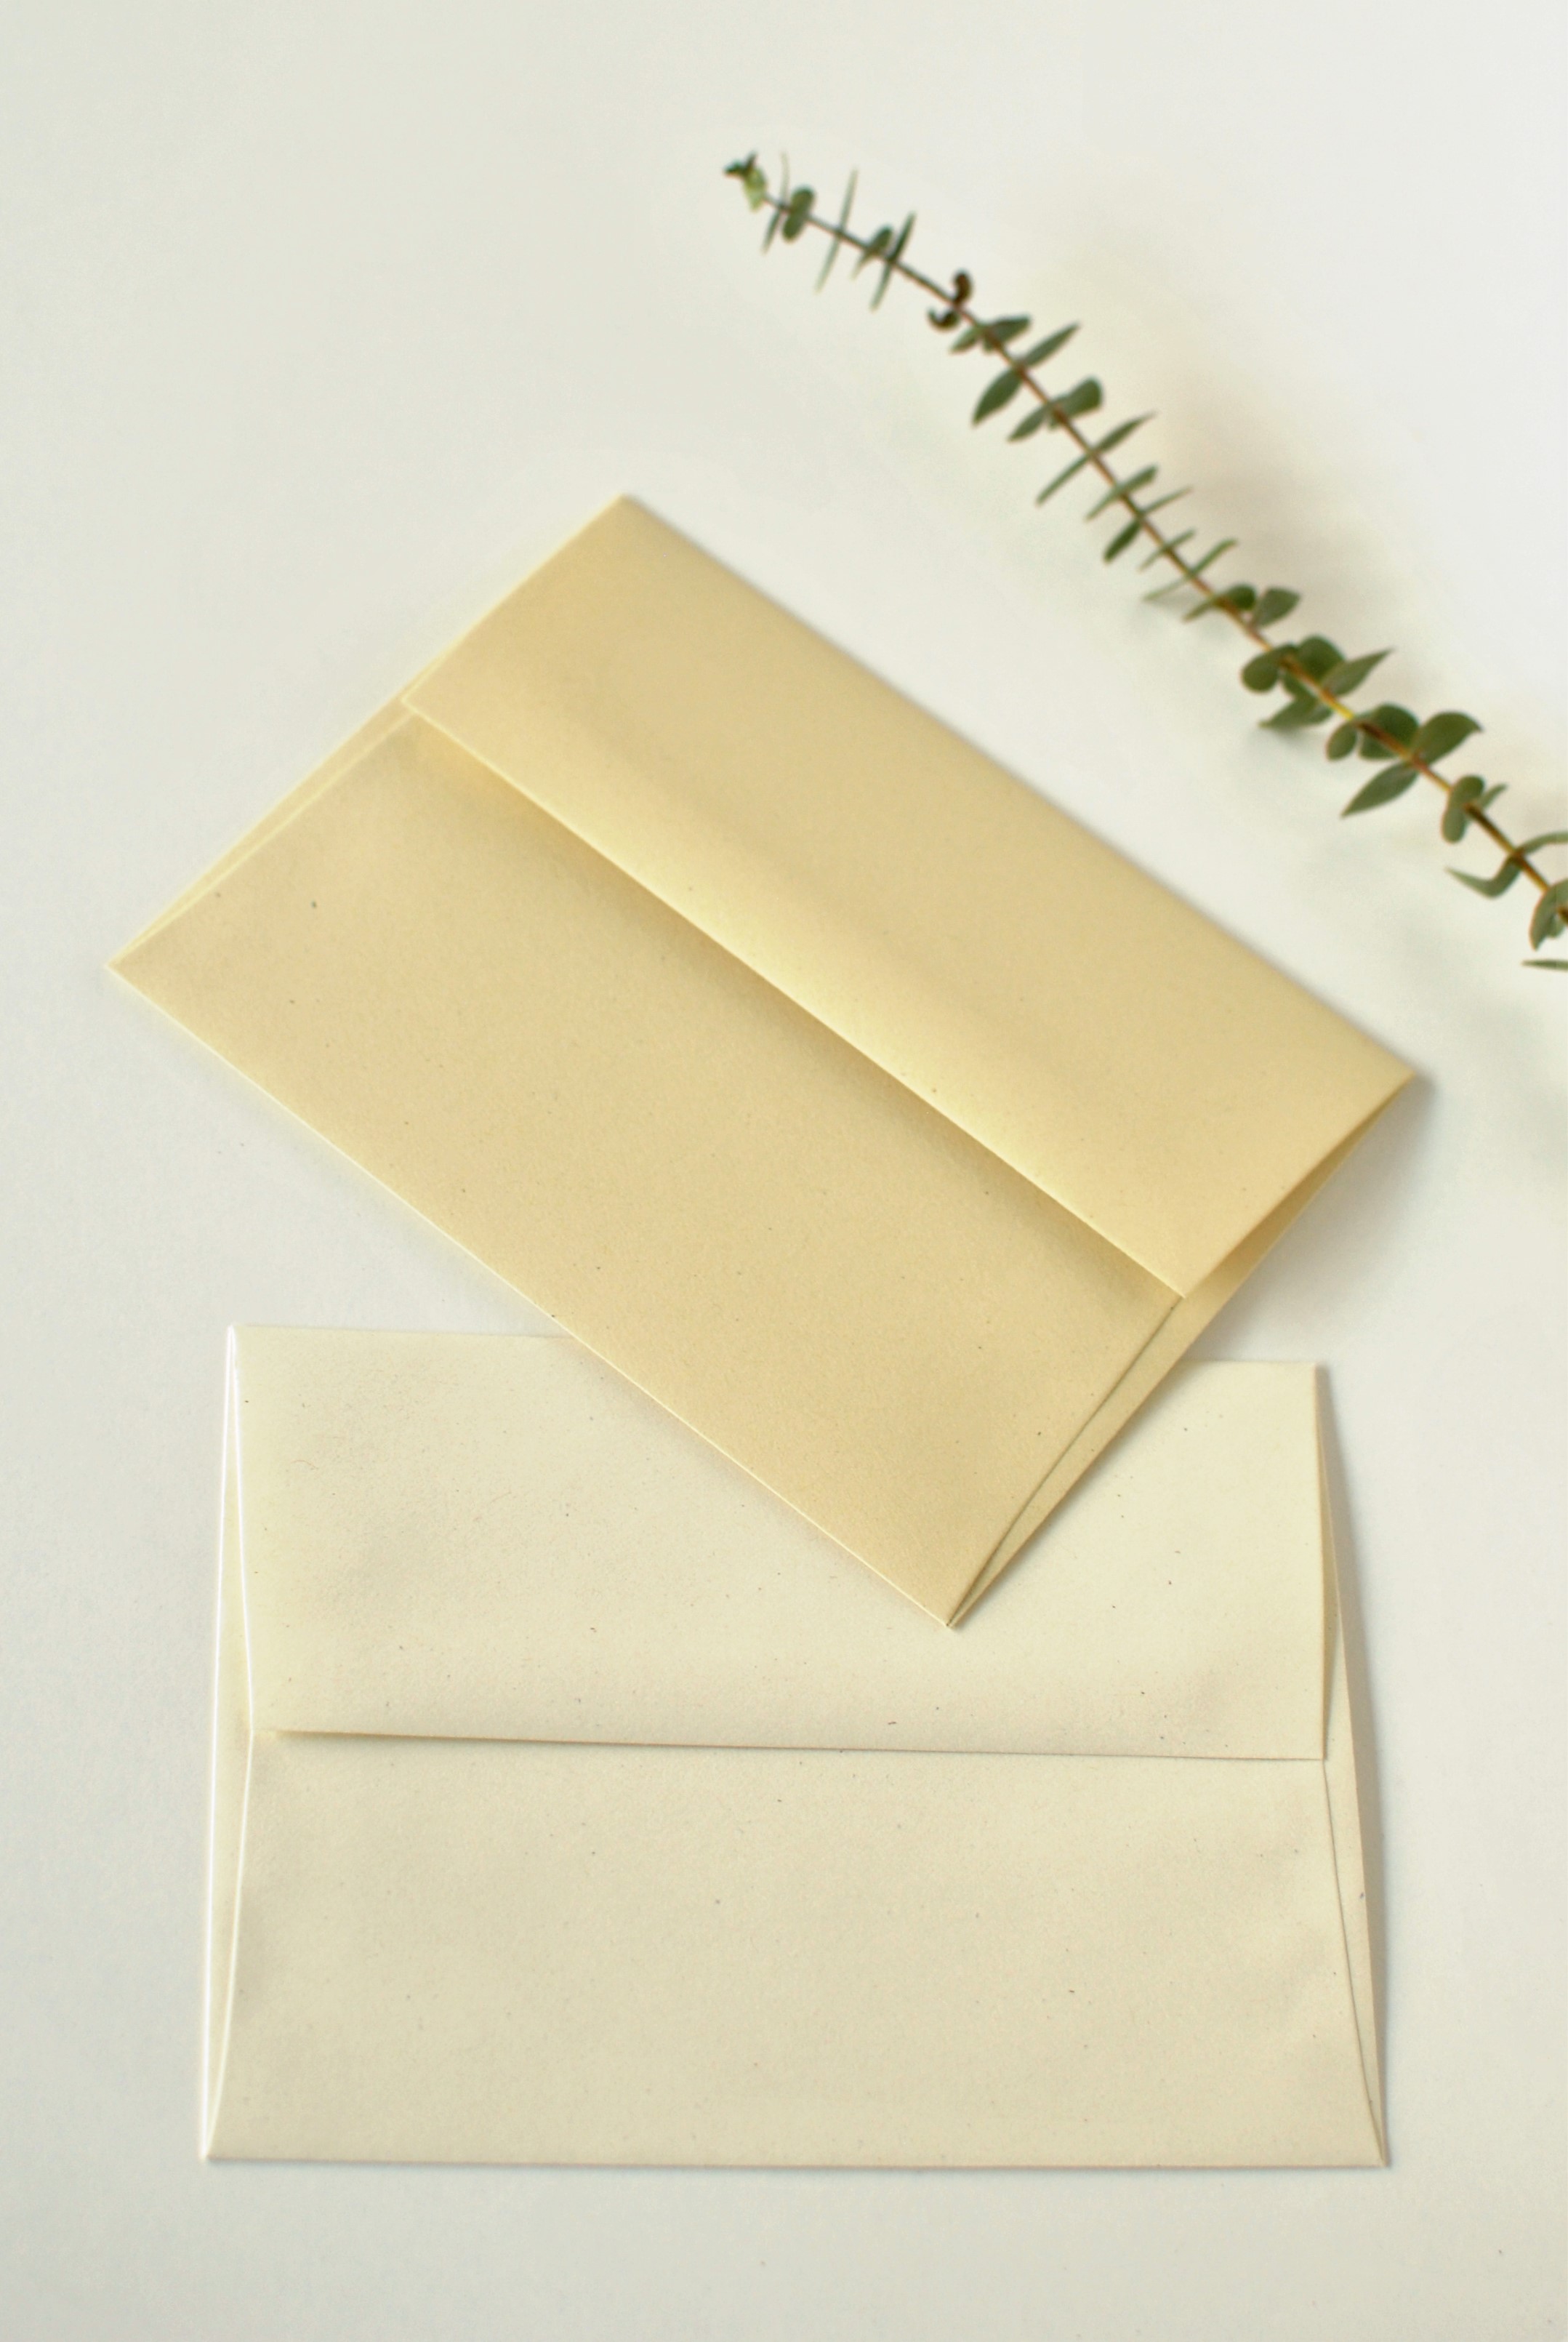 Enveloppes recyclées 15x15 cm, ocre, Couleur de Provence, 100g, lot de 50  achat vente écologique - Acheter sur